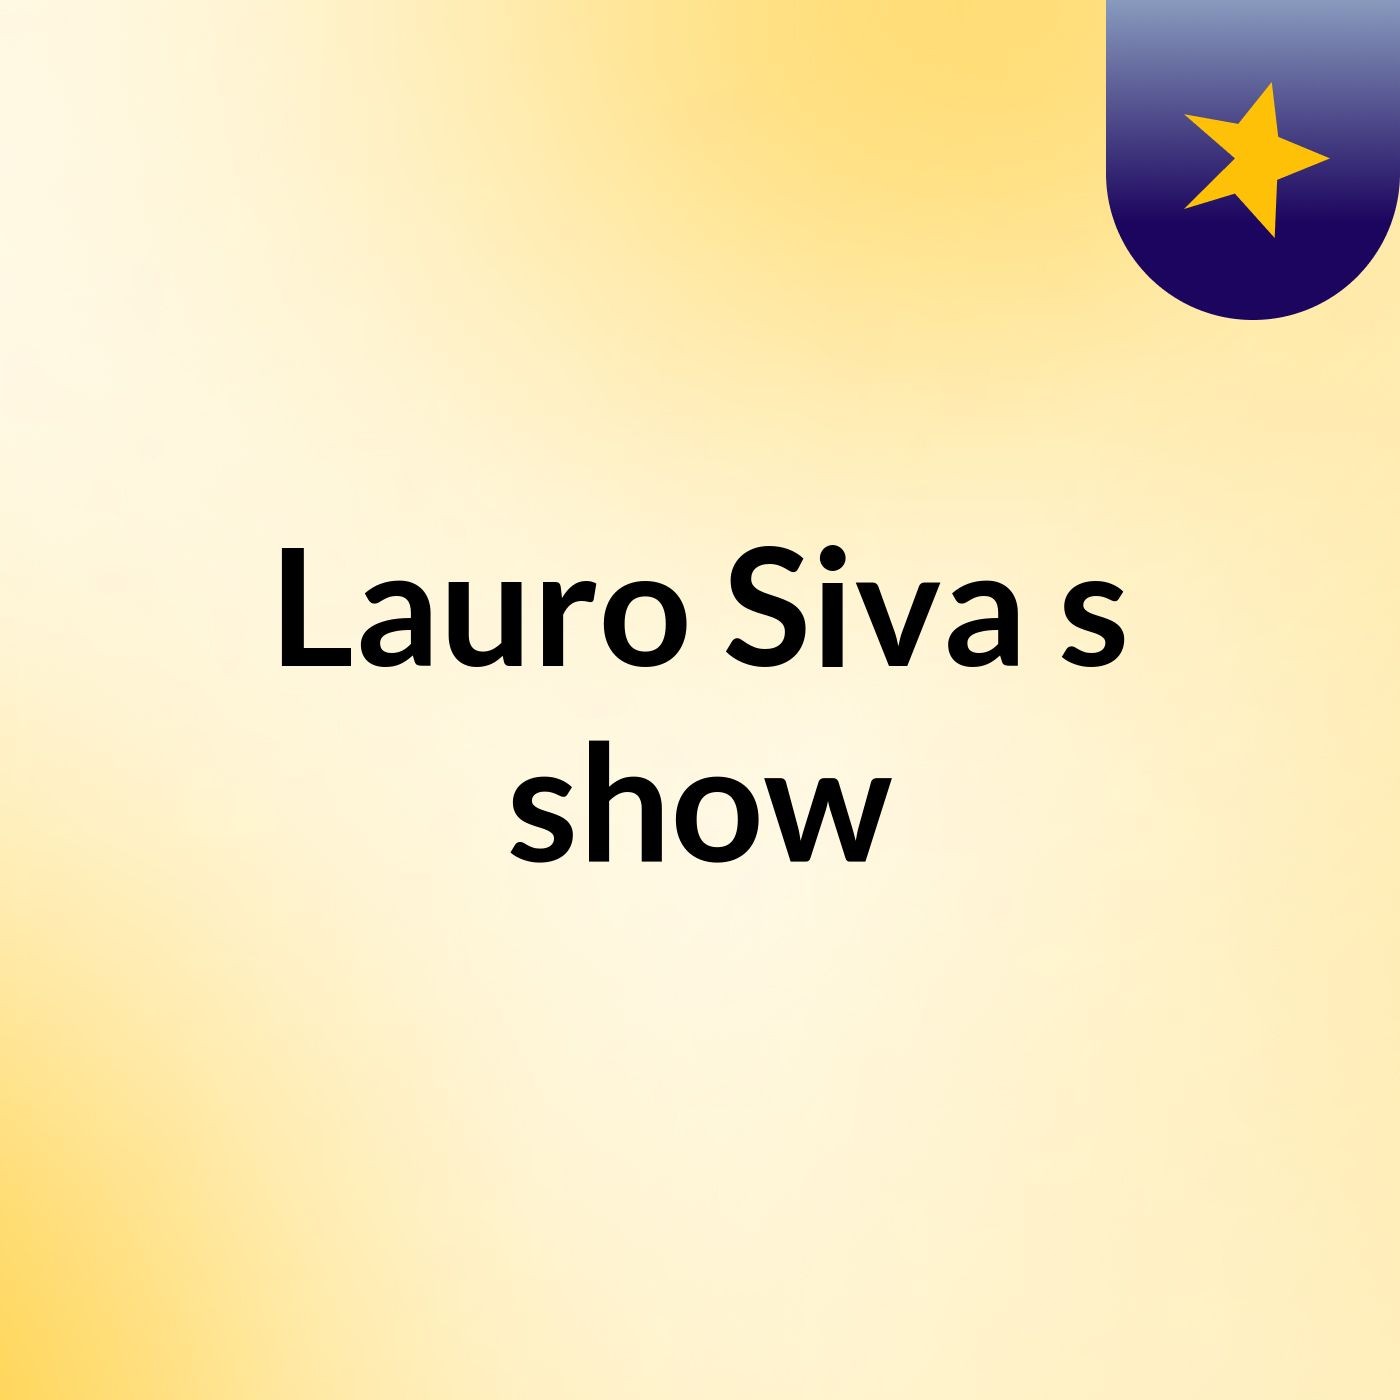 Lauro Siva's show